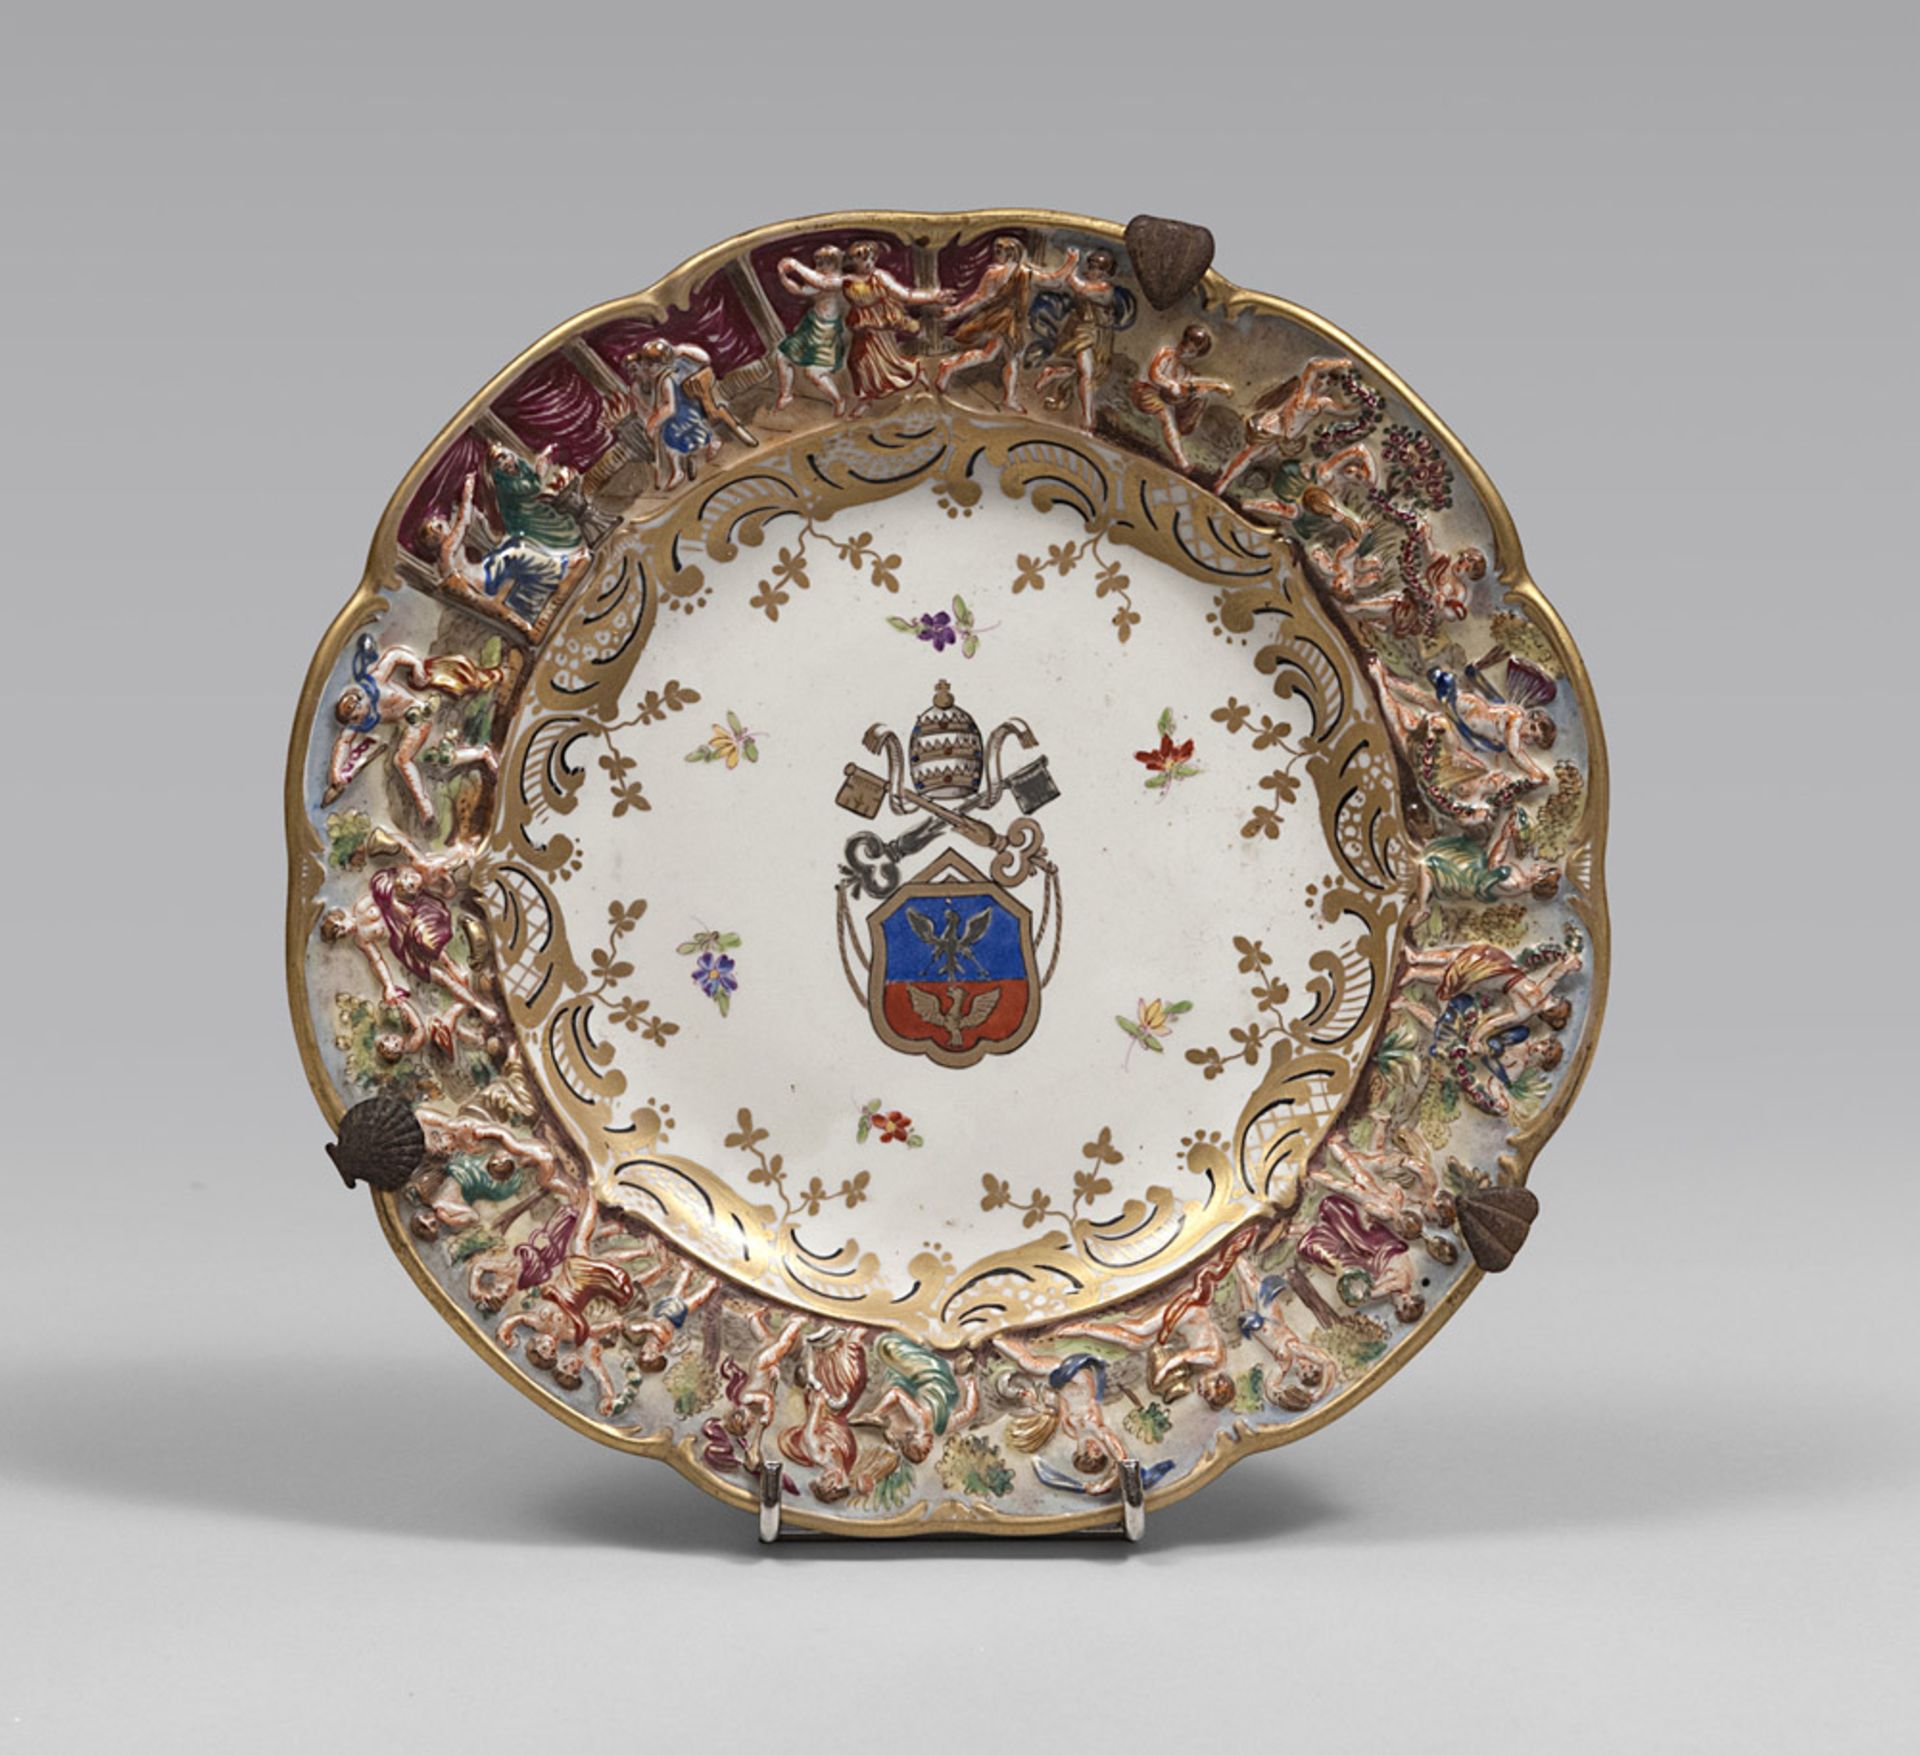 Porcelain dish, 19th Century Capodimonte. Diameter cm. 23. PIATTO IN PORCELLANA, CAPODIMONTE XIX